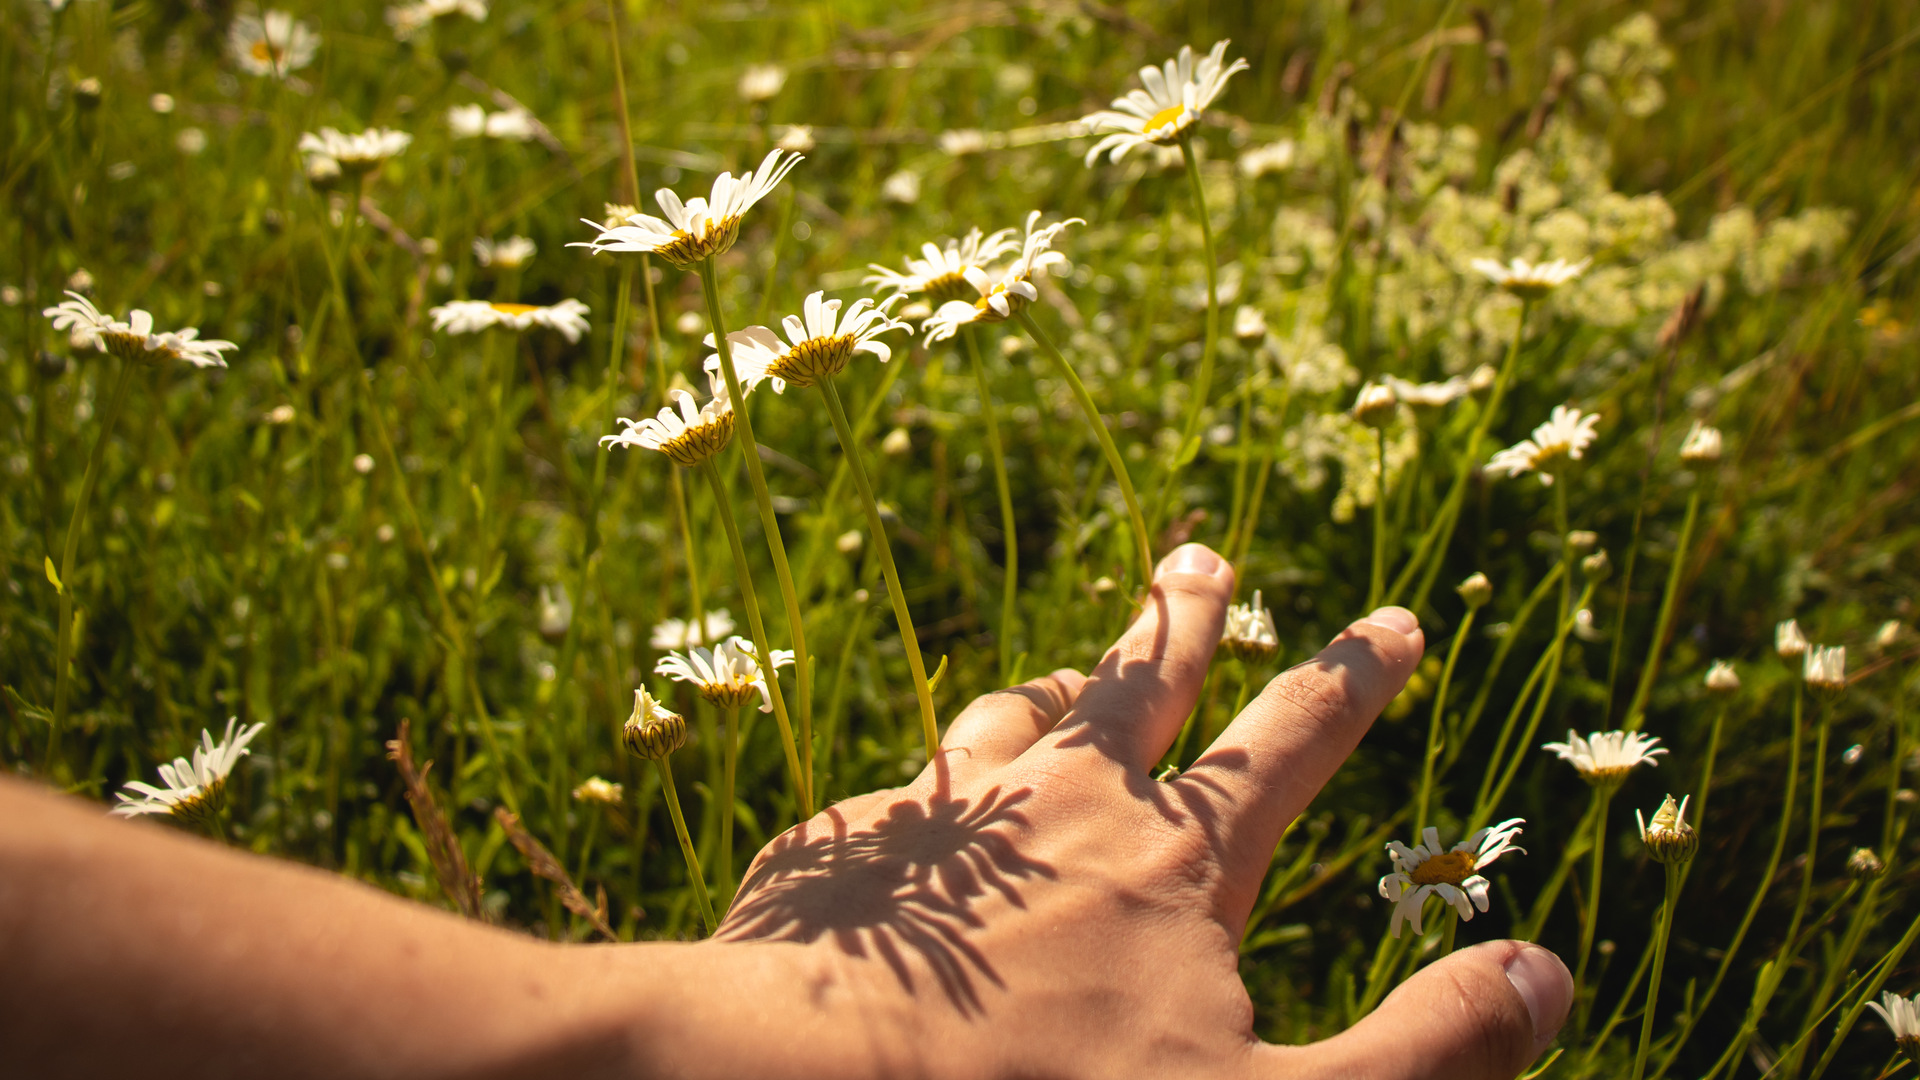 En hand drar fingrarna genom blommor och högt gräs.